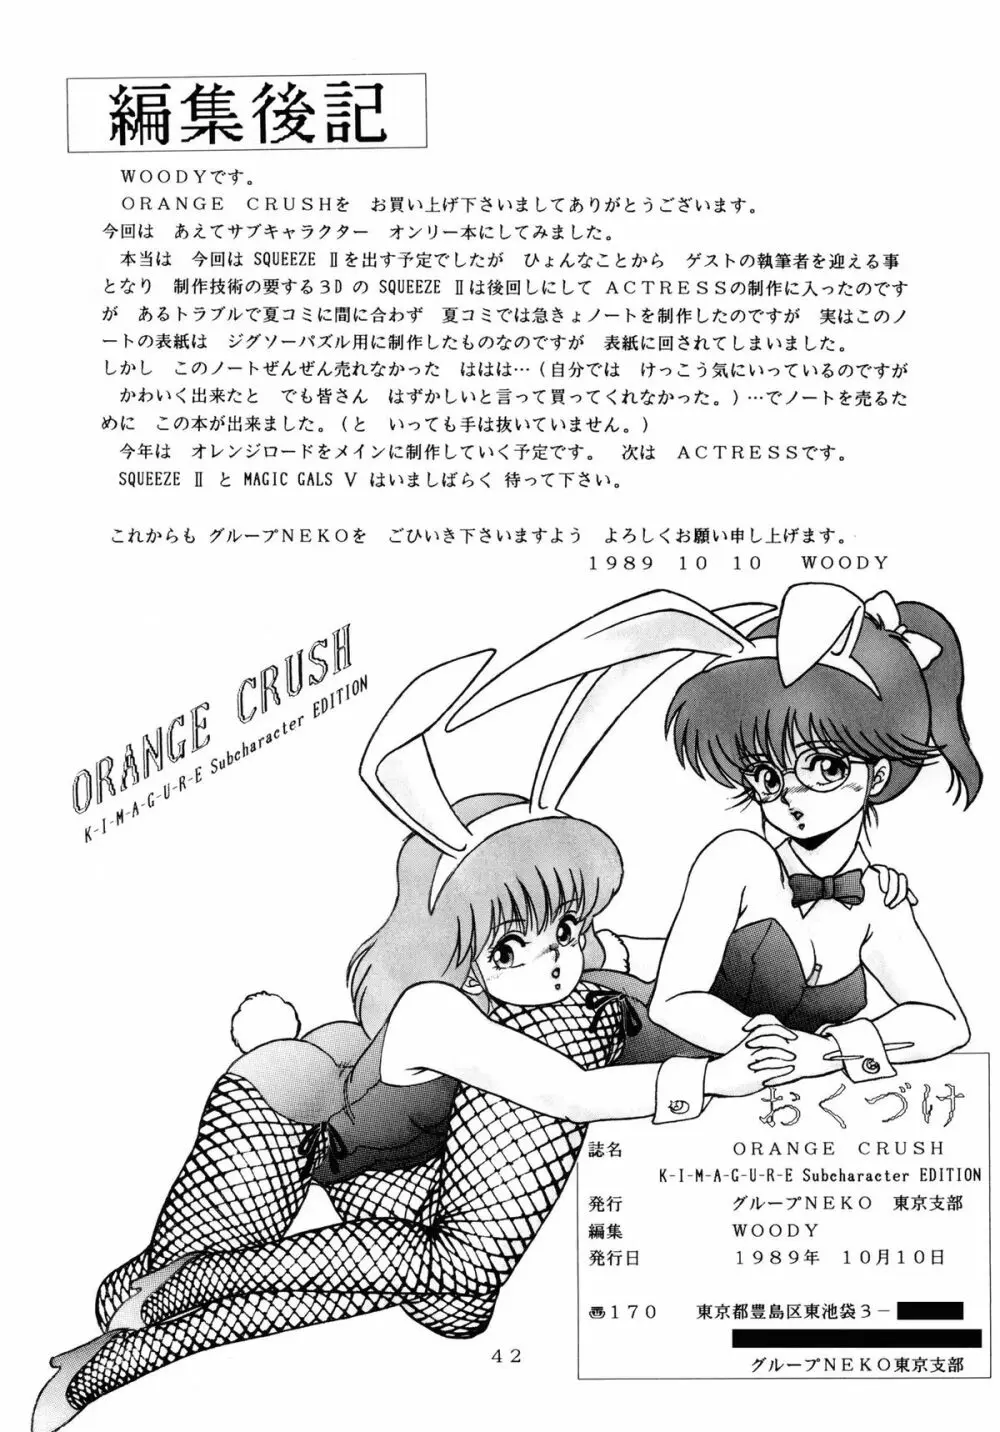 [グループNEKO (WOODY)] ORANGE CRUSH K-I-M-A-G-U-R-E Subcharacter EDITION (きまぐれオレンジ☆ロード) 43ページ